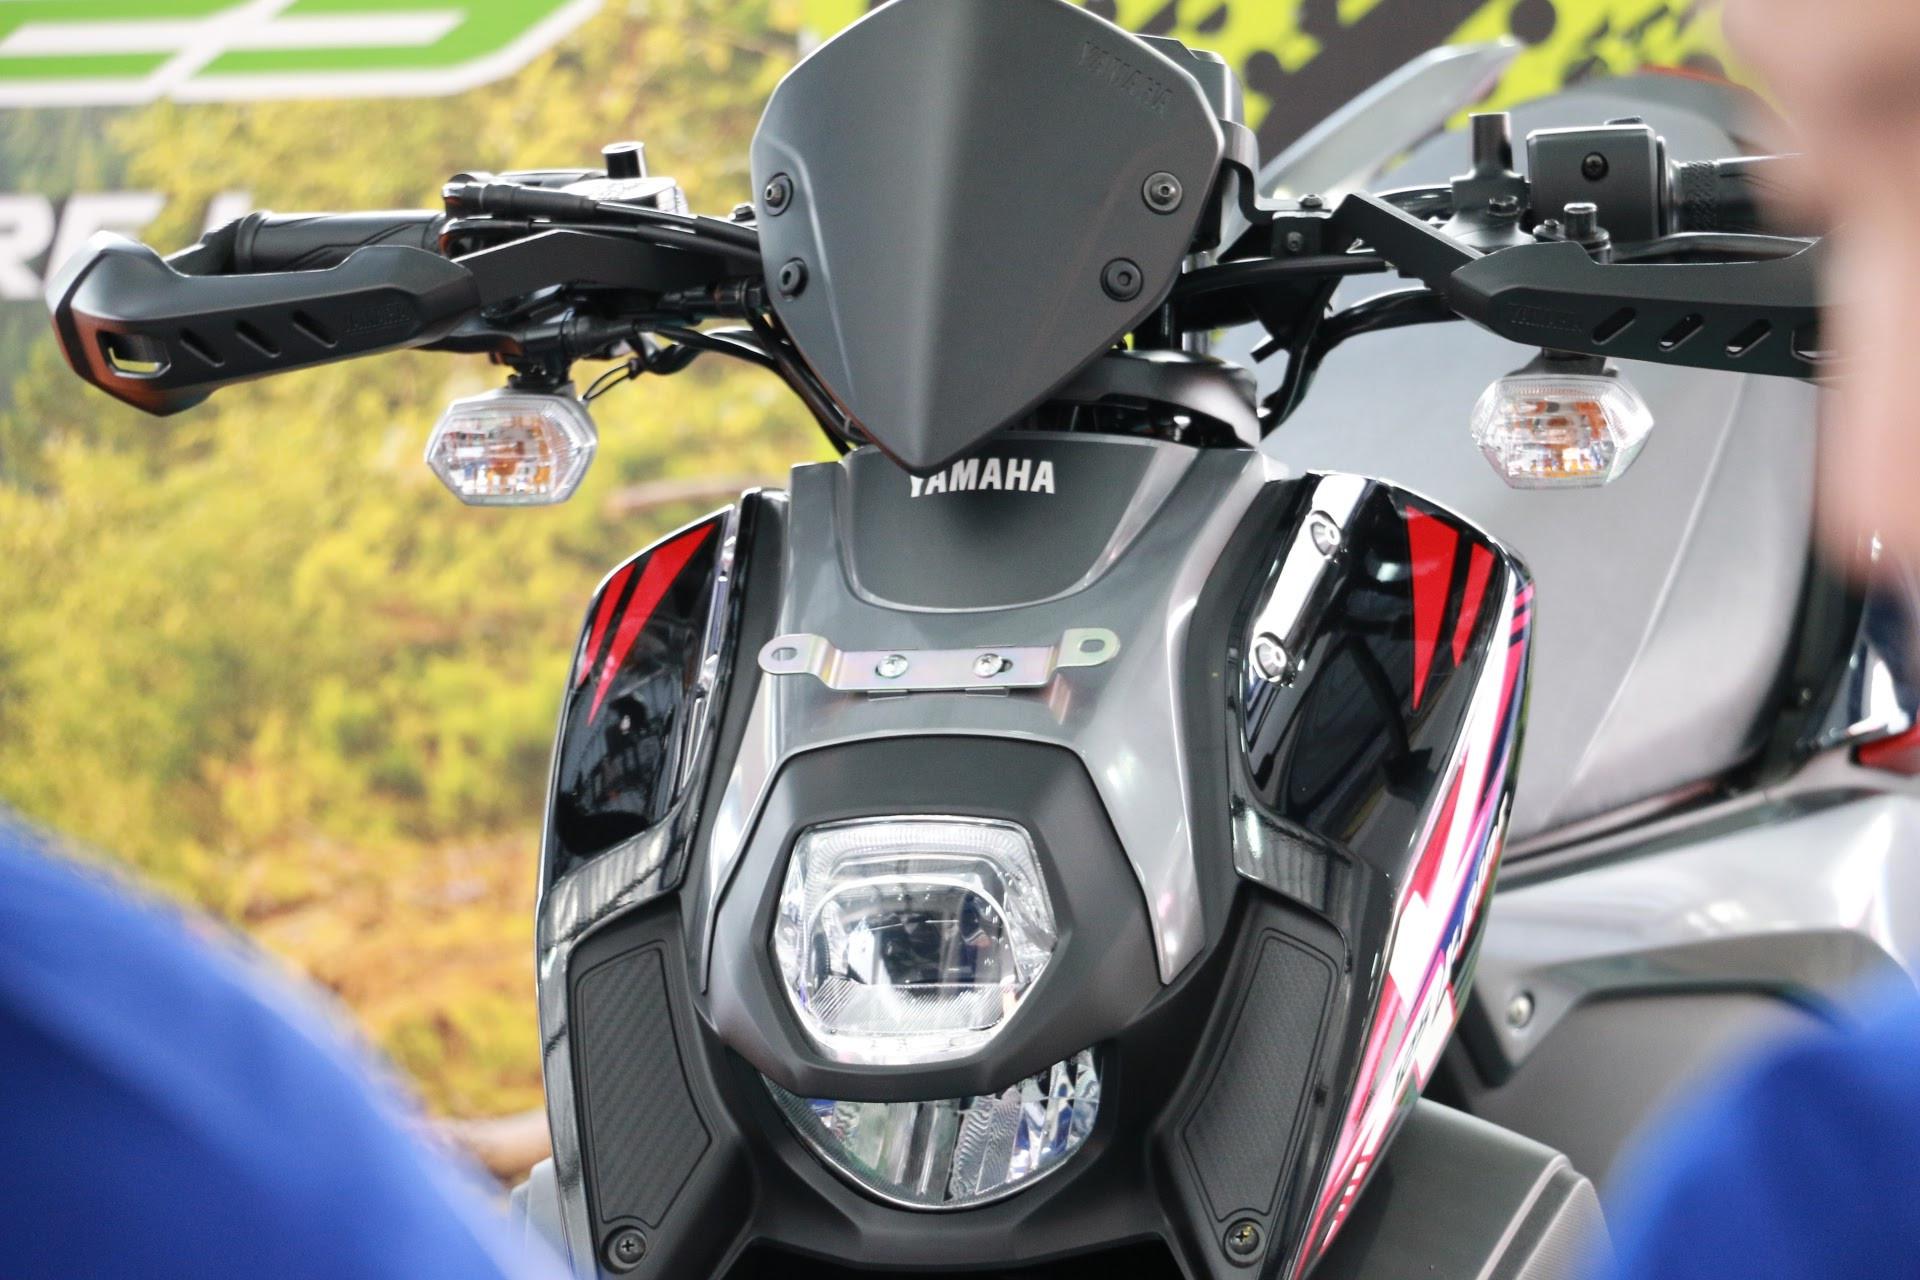 All New X-Ride tampil memukau dengan tampilan dan teknologi baru